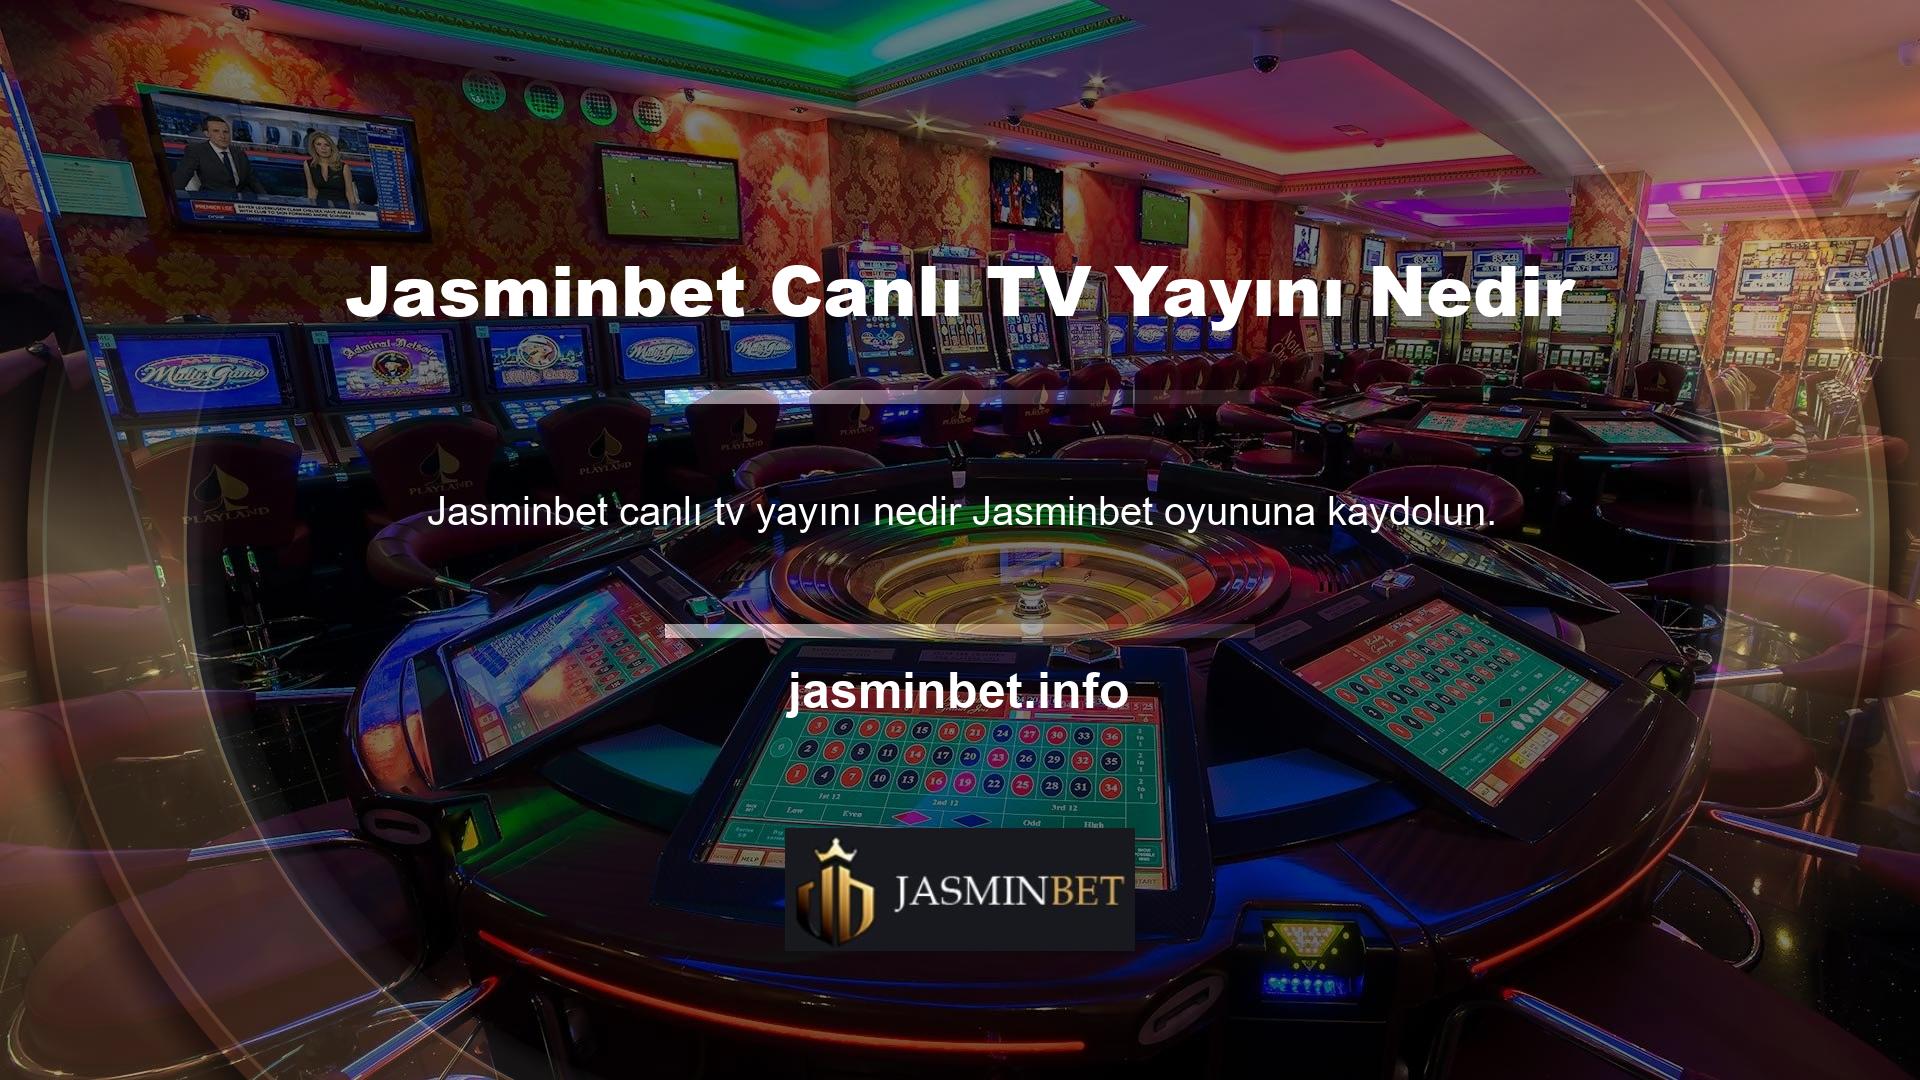 Casino ve casino oyunlarının yanı sıra Jasminbet TV gibi sistemlerde oynanabilen uygulamalar da geliştiriyoruz